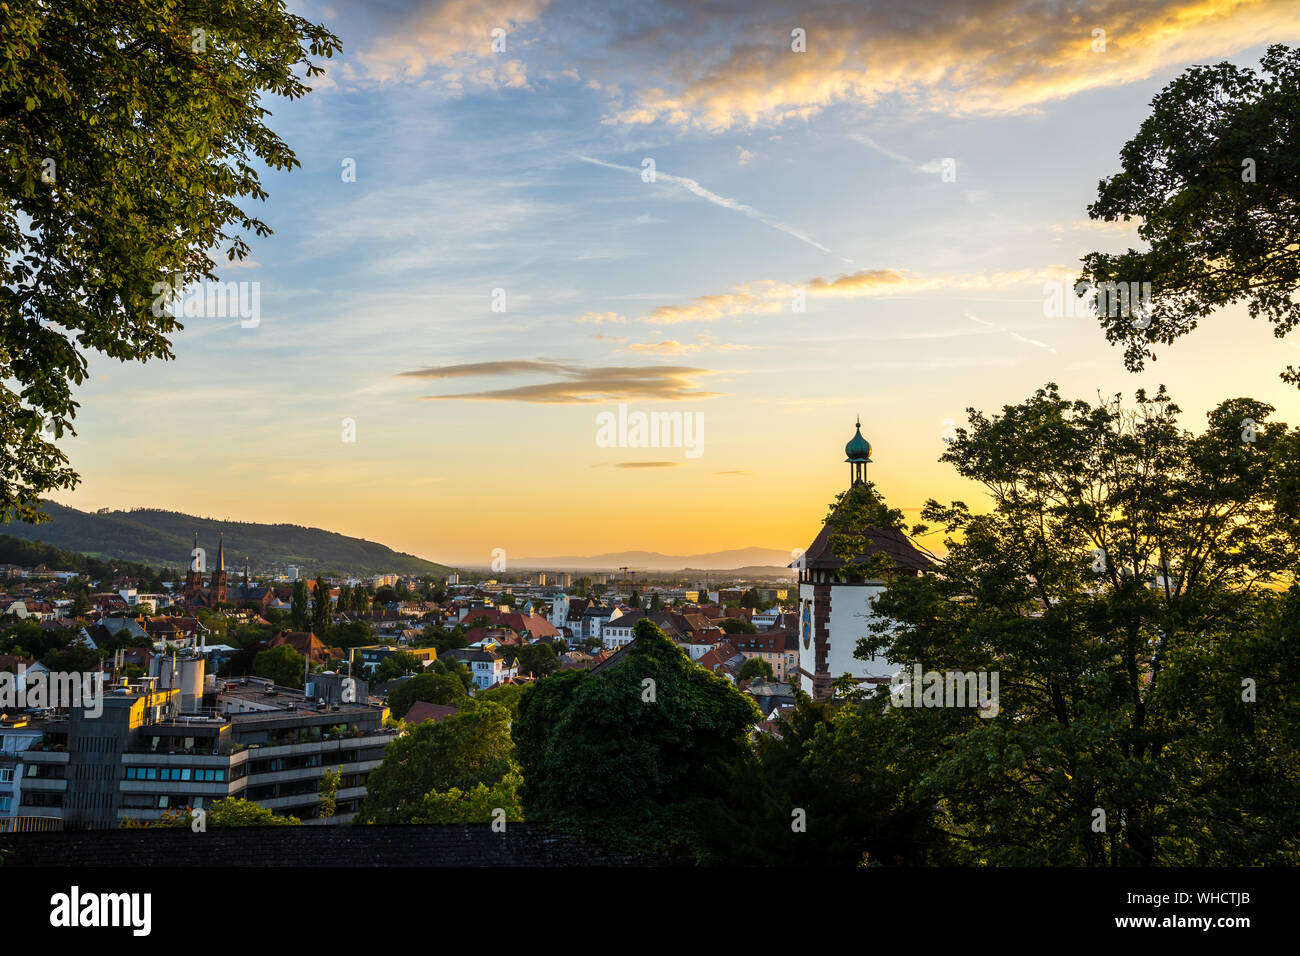 Germania, bella calda luce del tramonto che brilla sulla famosa città vecchia schwabentor gate in Freiburg im Breisgau, visto da sopra lo skyline della città in summe Foto Stock